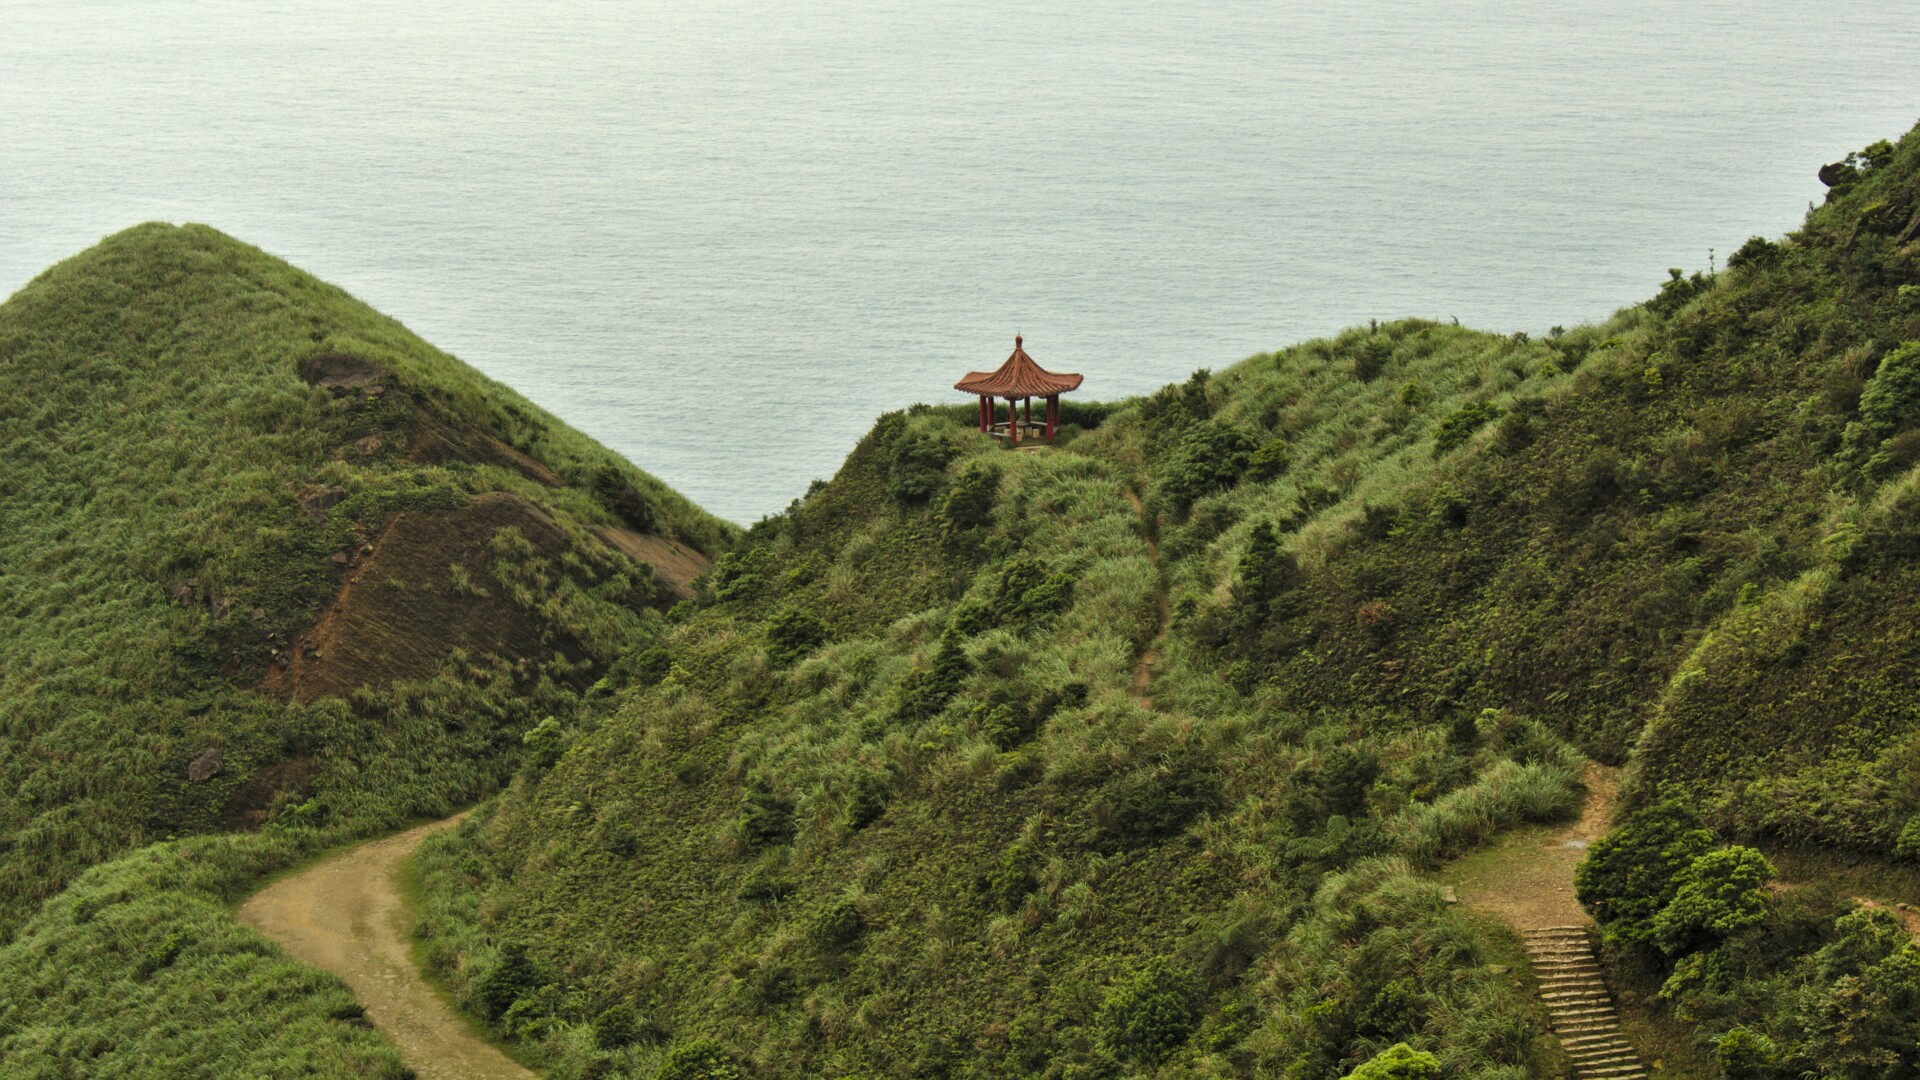 Ein traditioneller Pavillon sitzt auf einem grünen, grasbewachsenen Hügel über dem Meer. Ein gewundener Pfad führt zum Pavillon hoch, umgeben von üppigem Grün und der ruhigen Wasserfläche im Hintergrund.